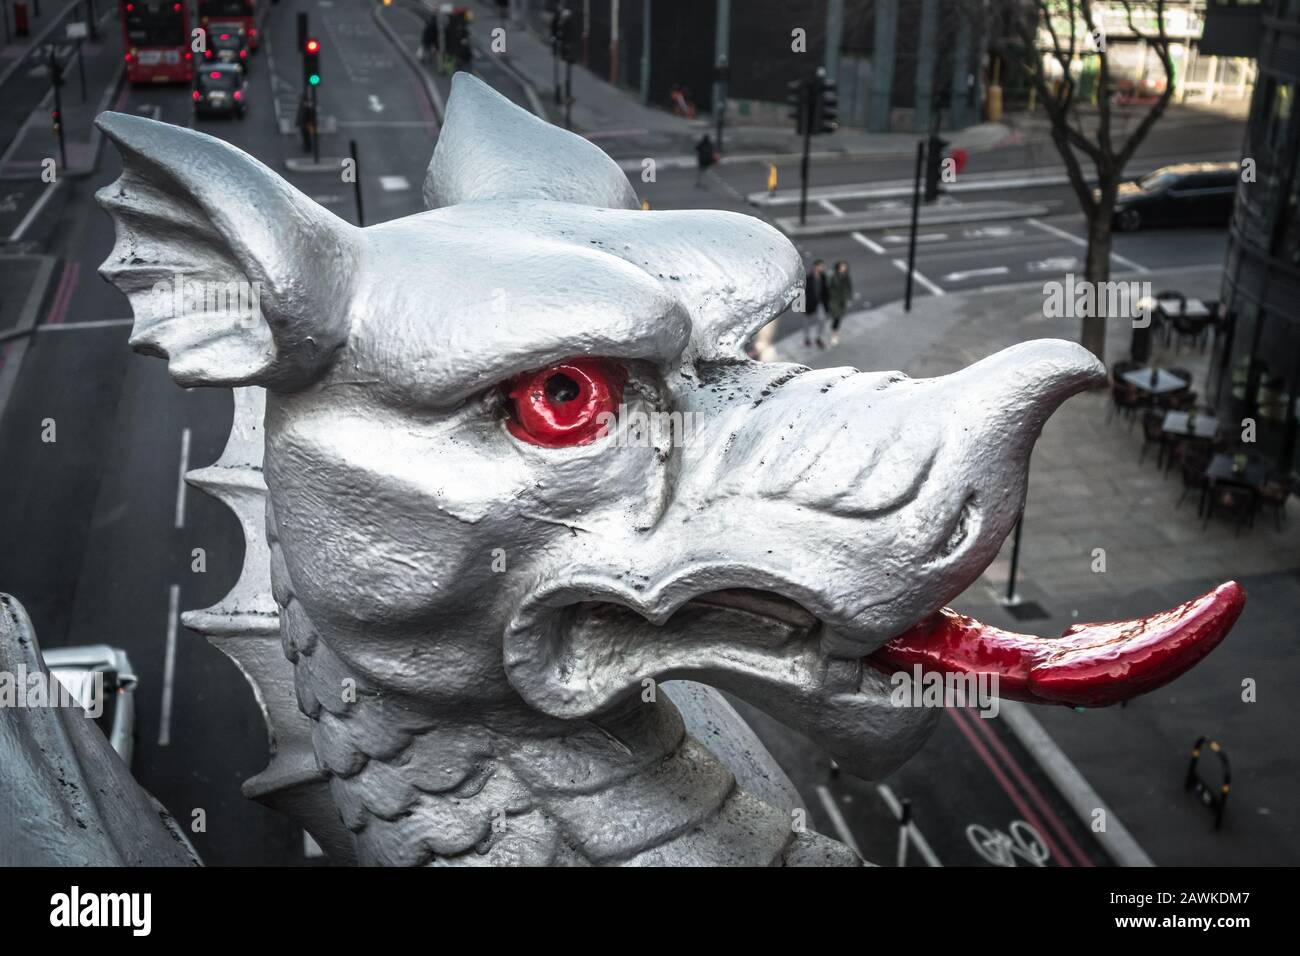 Gros plan des dragons d'argent de la City de Londres sur Holborn Viaduct, Farringdon Street, Londres, Angleterre, Royaume-Uni Banque D'Images